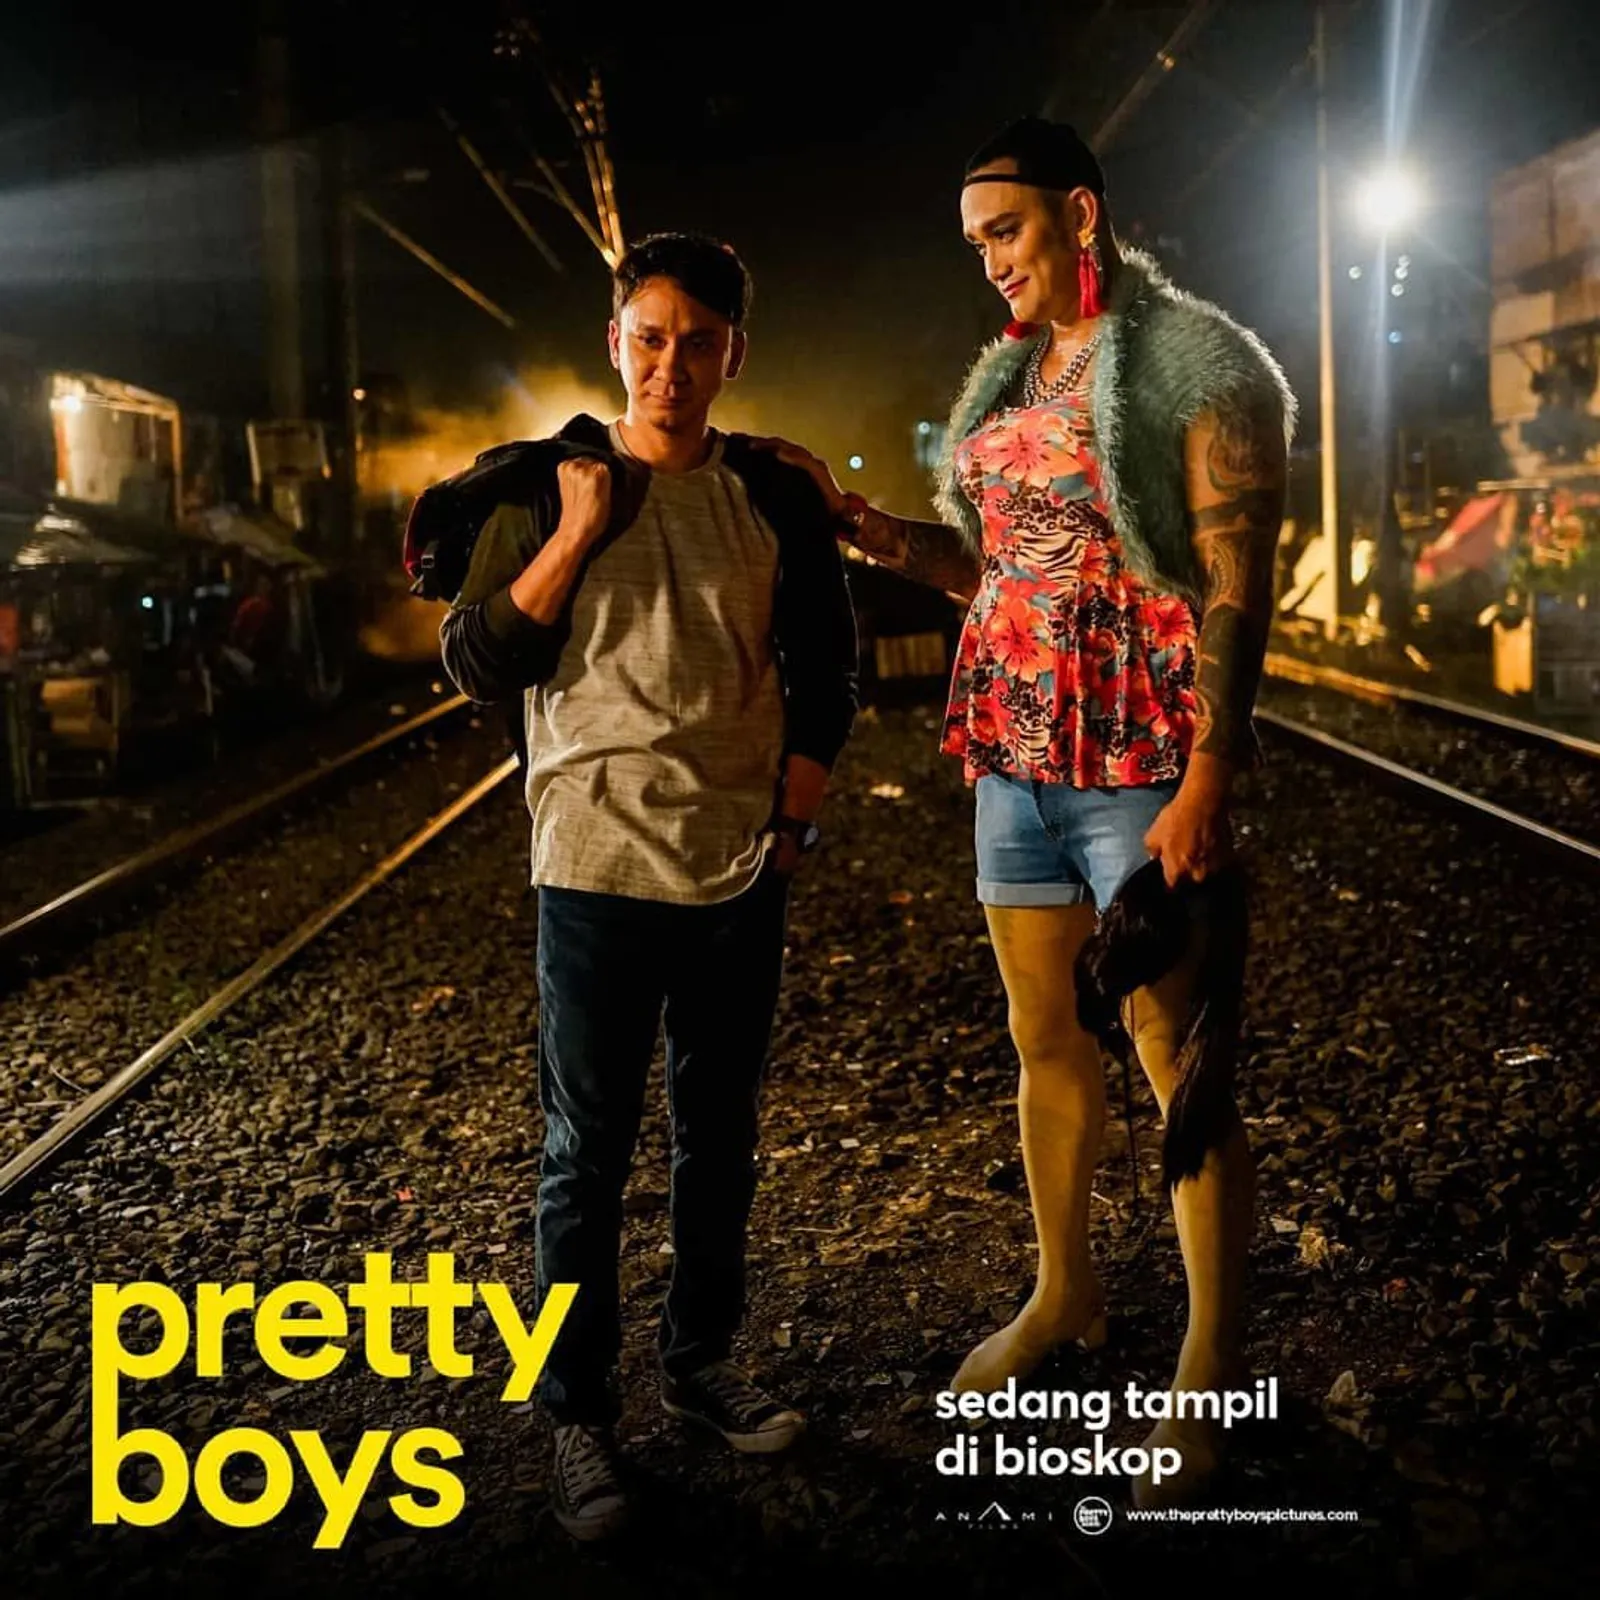 Menjadi Debut Banyak Selebritas, Ini 5 Fakta Menarik Film Pretty Boys